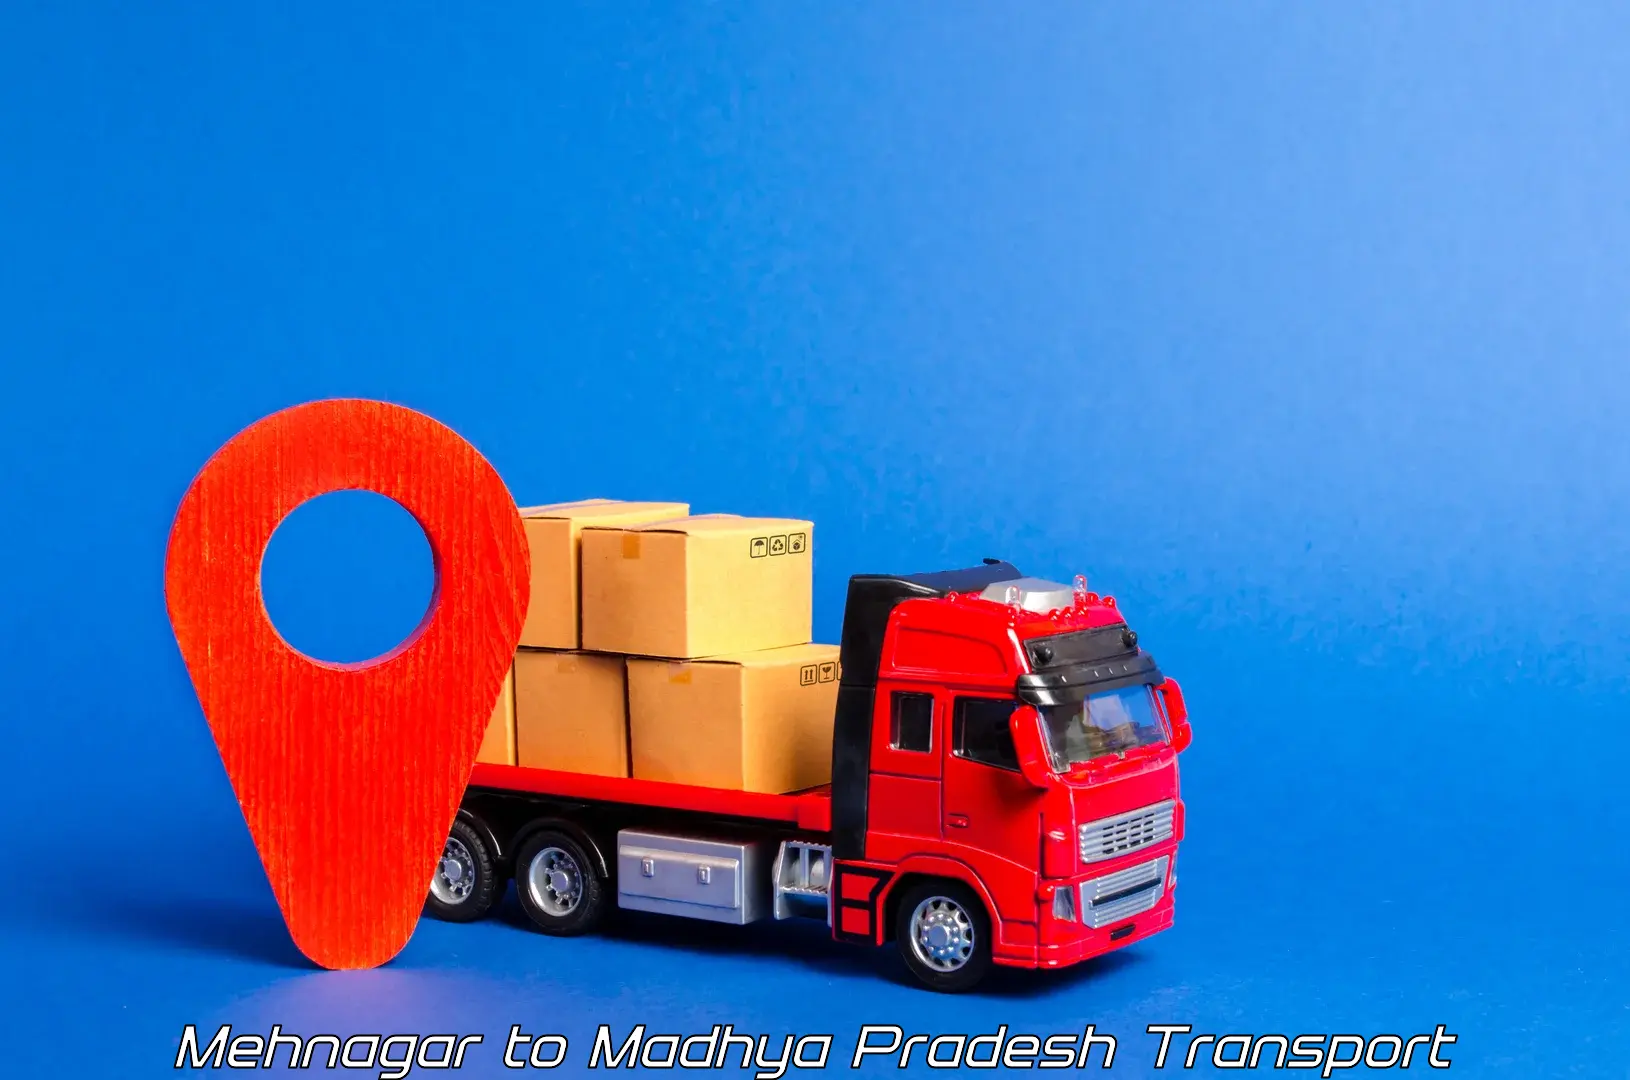 Daily parcel service transport Mehnagar to Lashkar